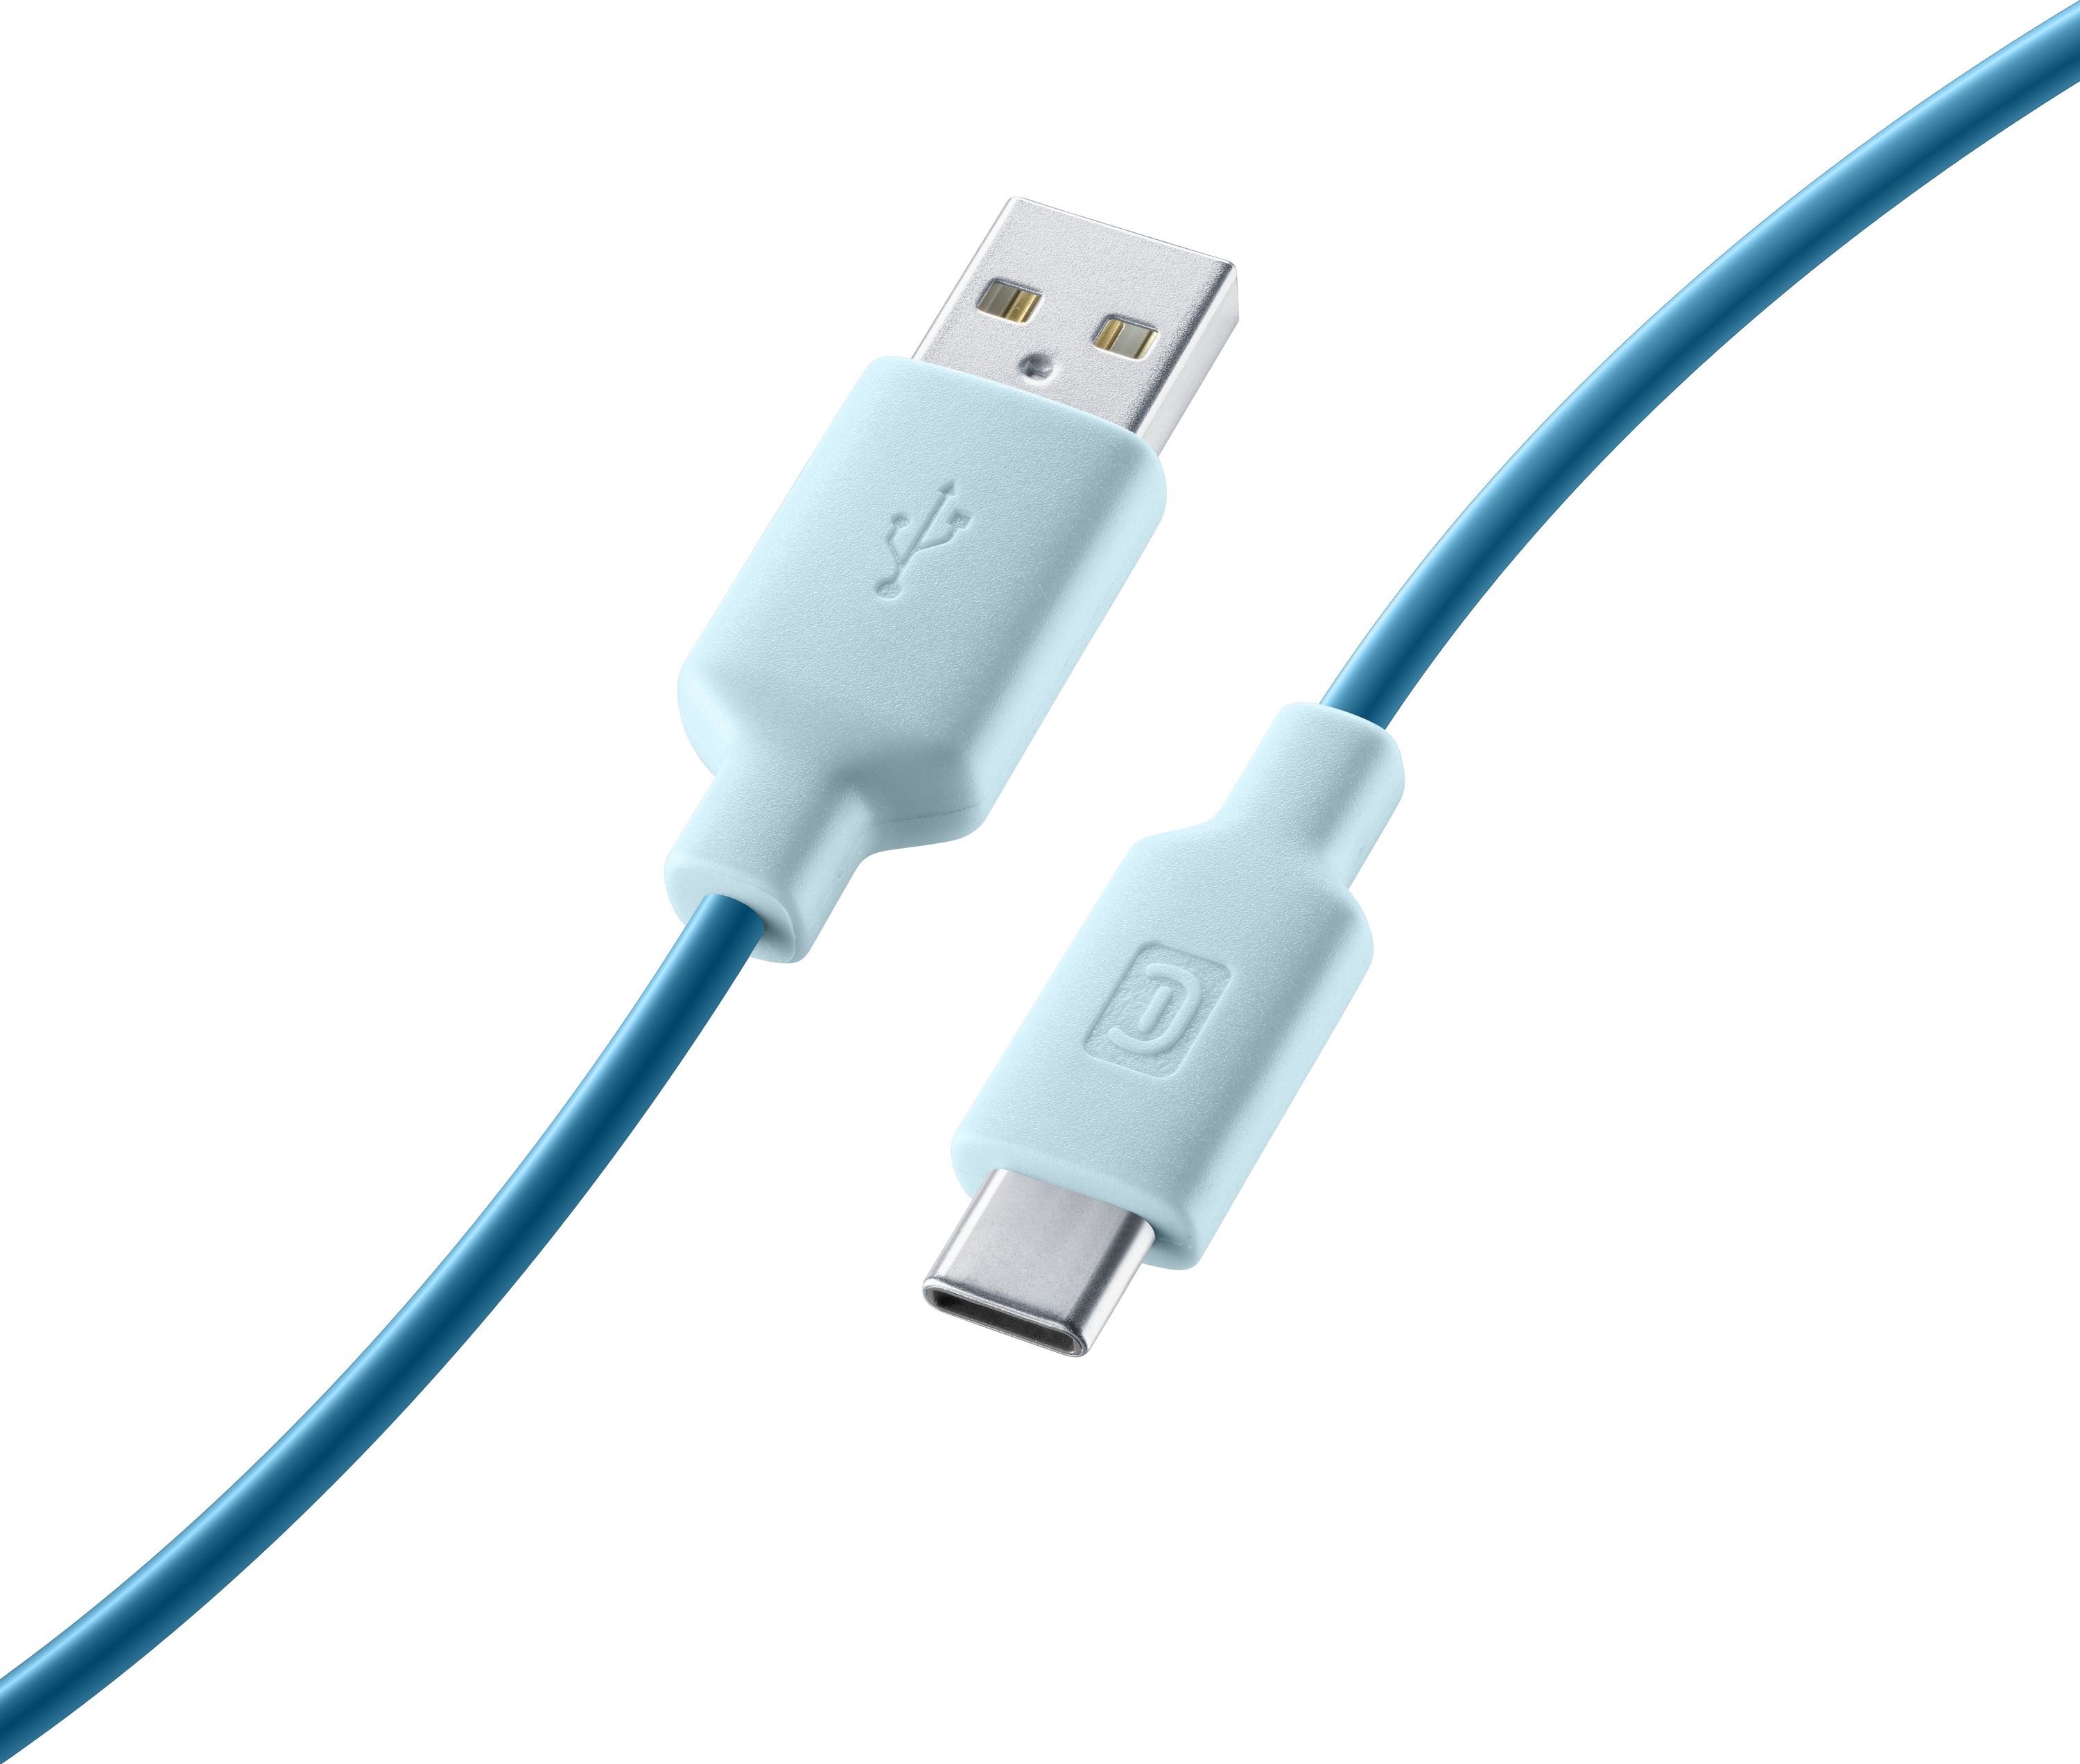 Stylecolor Cable 100cm - USB-C